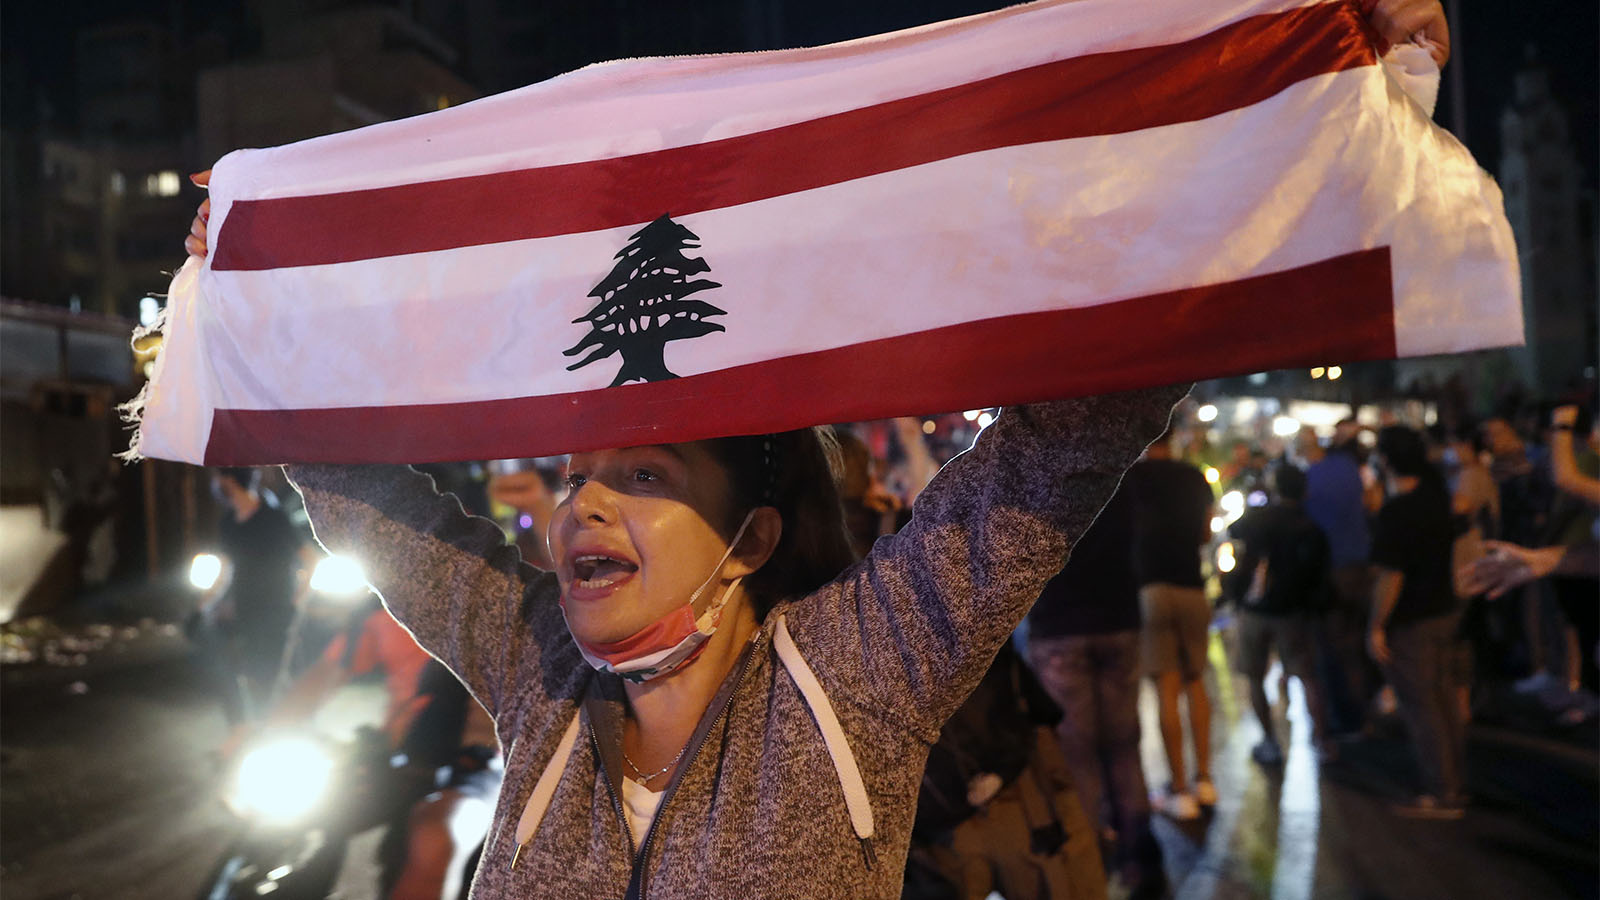 متظاهرة في لبنان ضد السلطة المتهمة بالازمة الاقتصادية الحادة في الدولة حسب ادعائهم (تصوير: AP Photo / Hussein Malla).